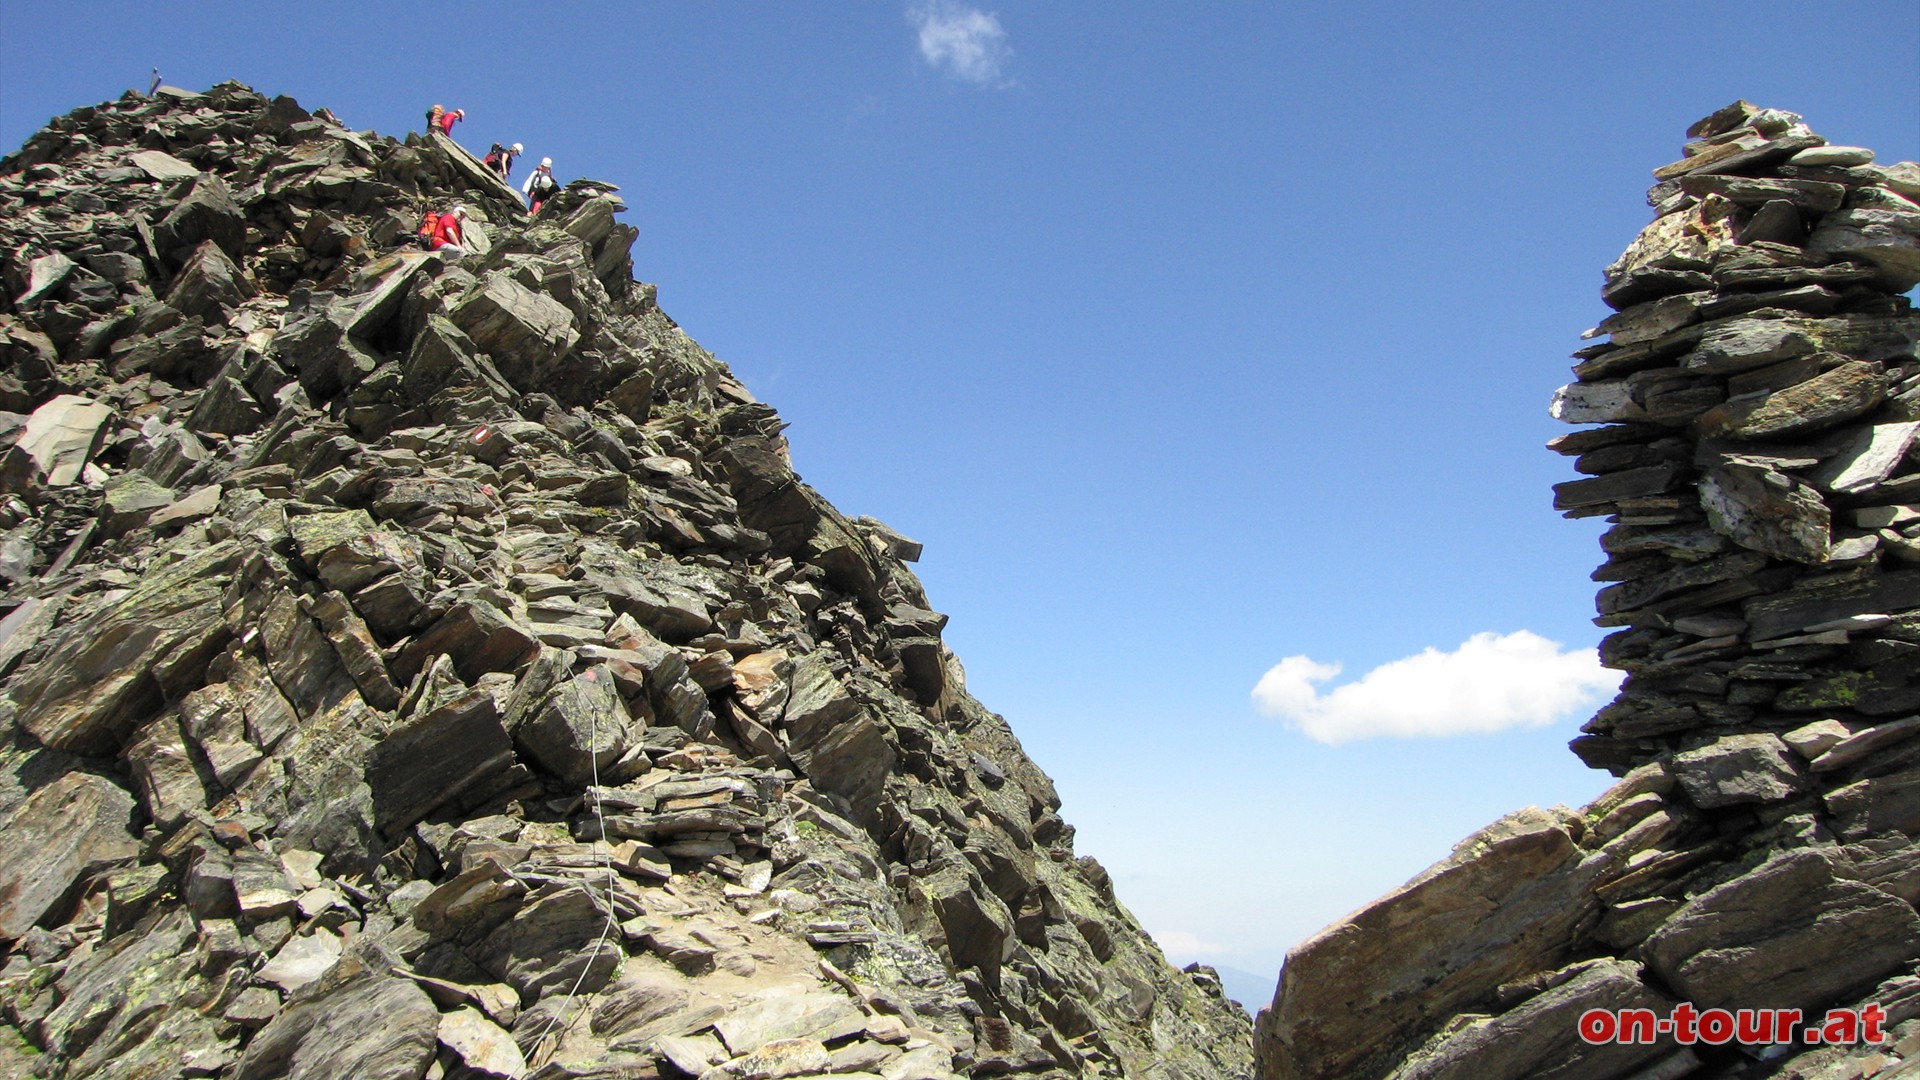 Von der Schönbichler-Scharte aus sind es nur noch wenige Meter bis zum Gipfel, die teilweise mit Seilen versichert sind. Trittsicherheit und Schwindelfreiheit sollten auf jeden Fall gegeben sein.